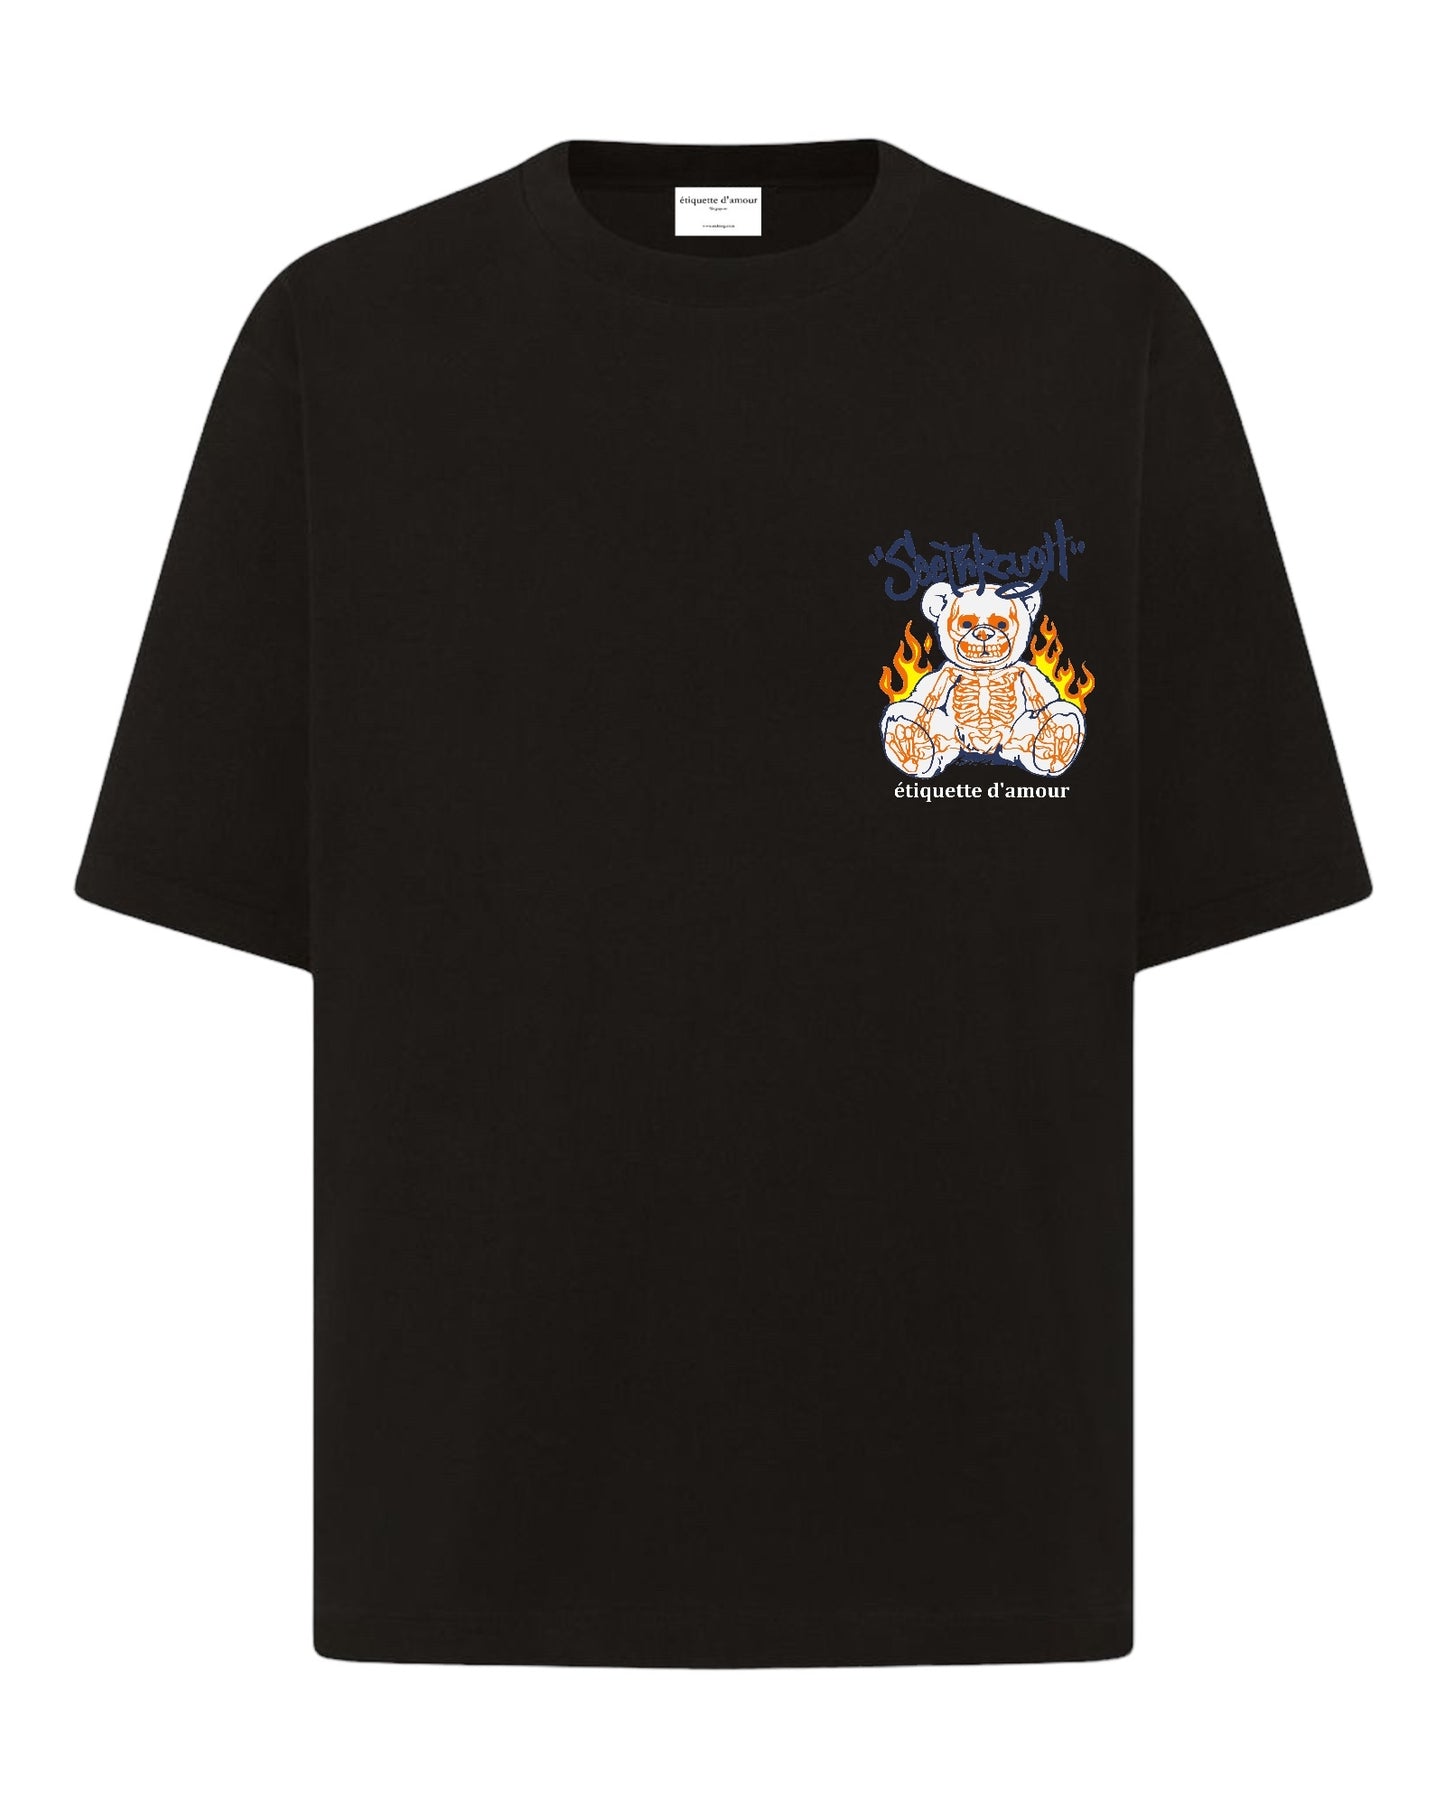 XLuxe T-Shirt #0010